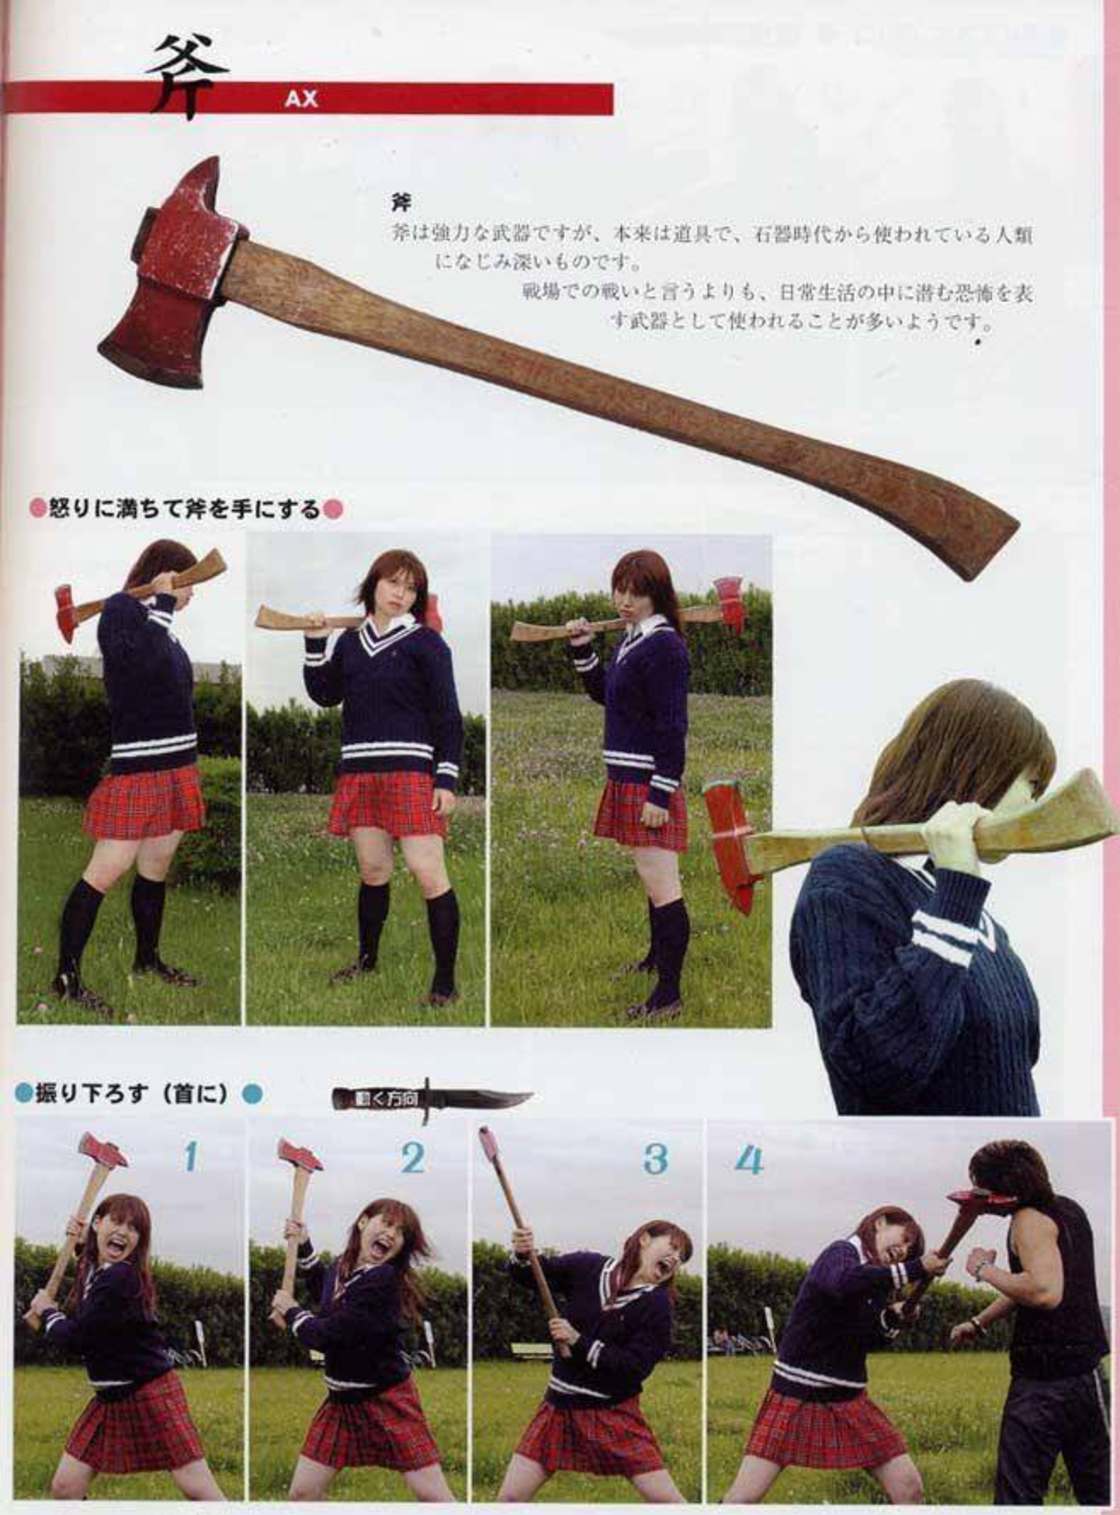 random japanese girl with axe